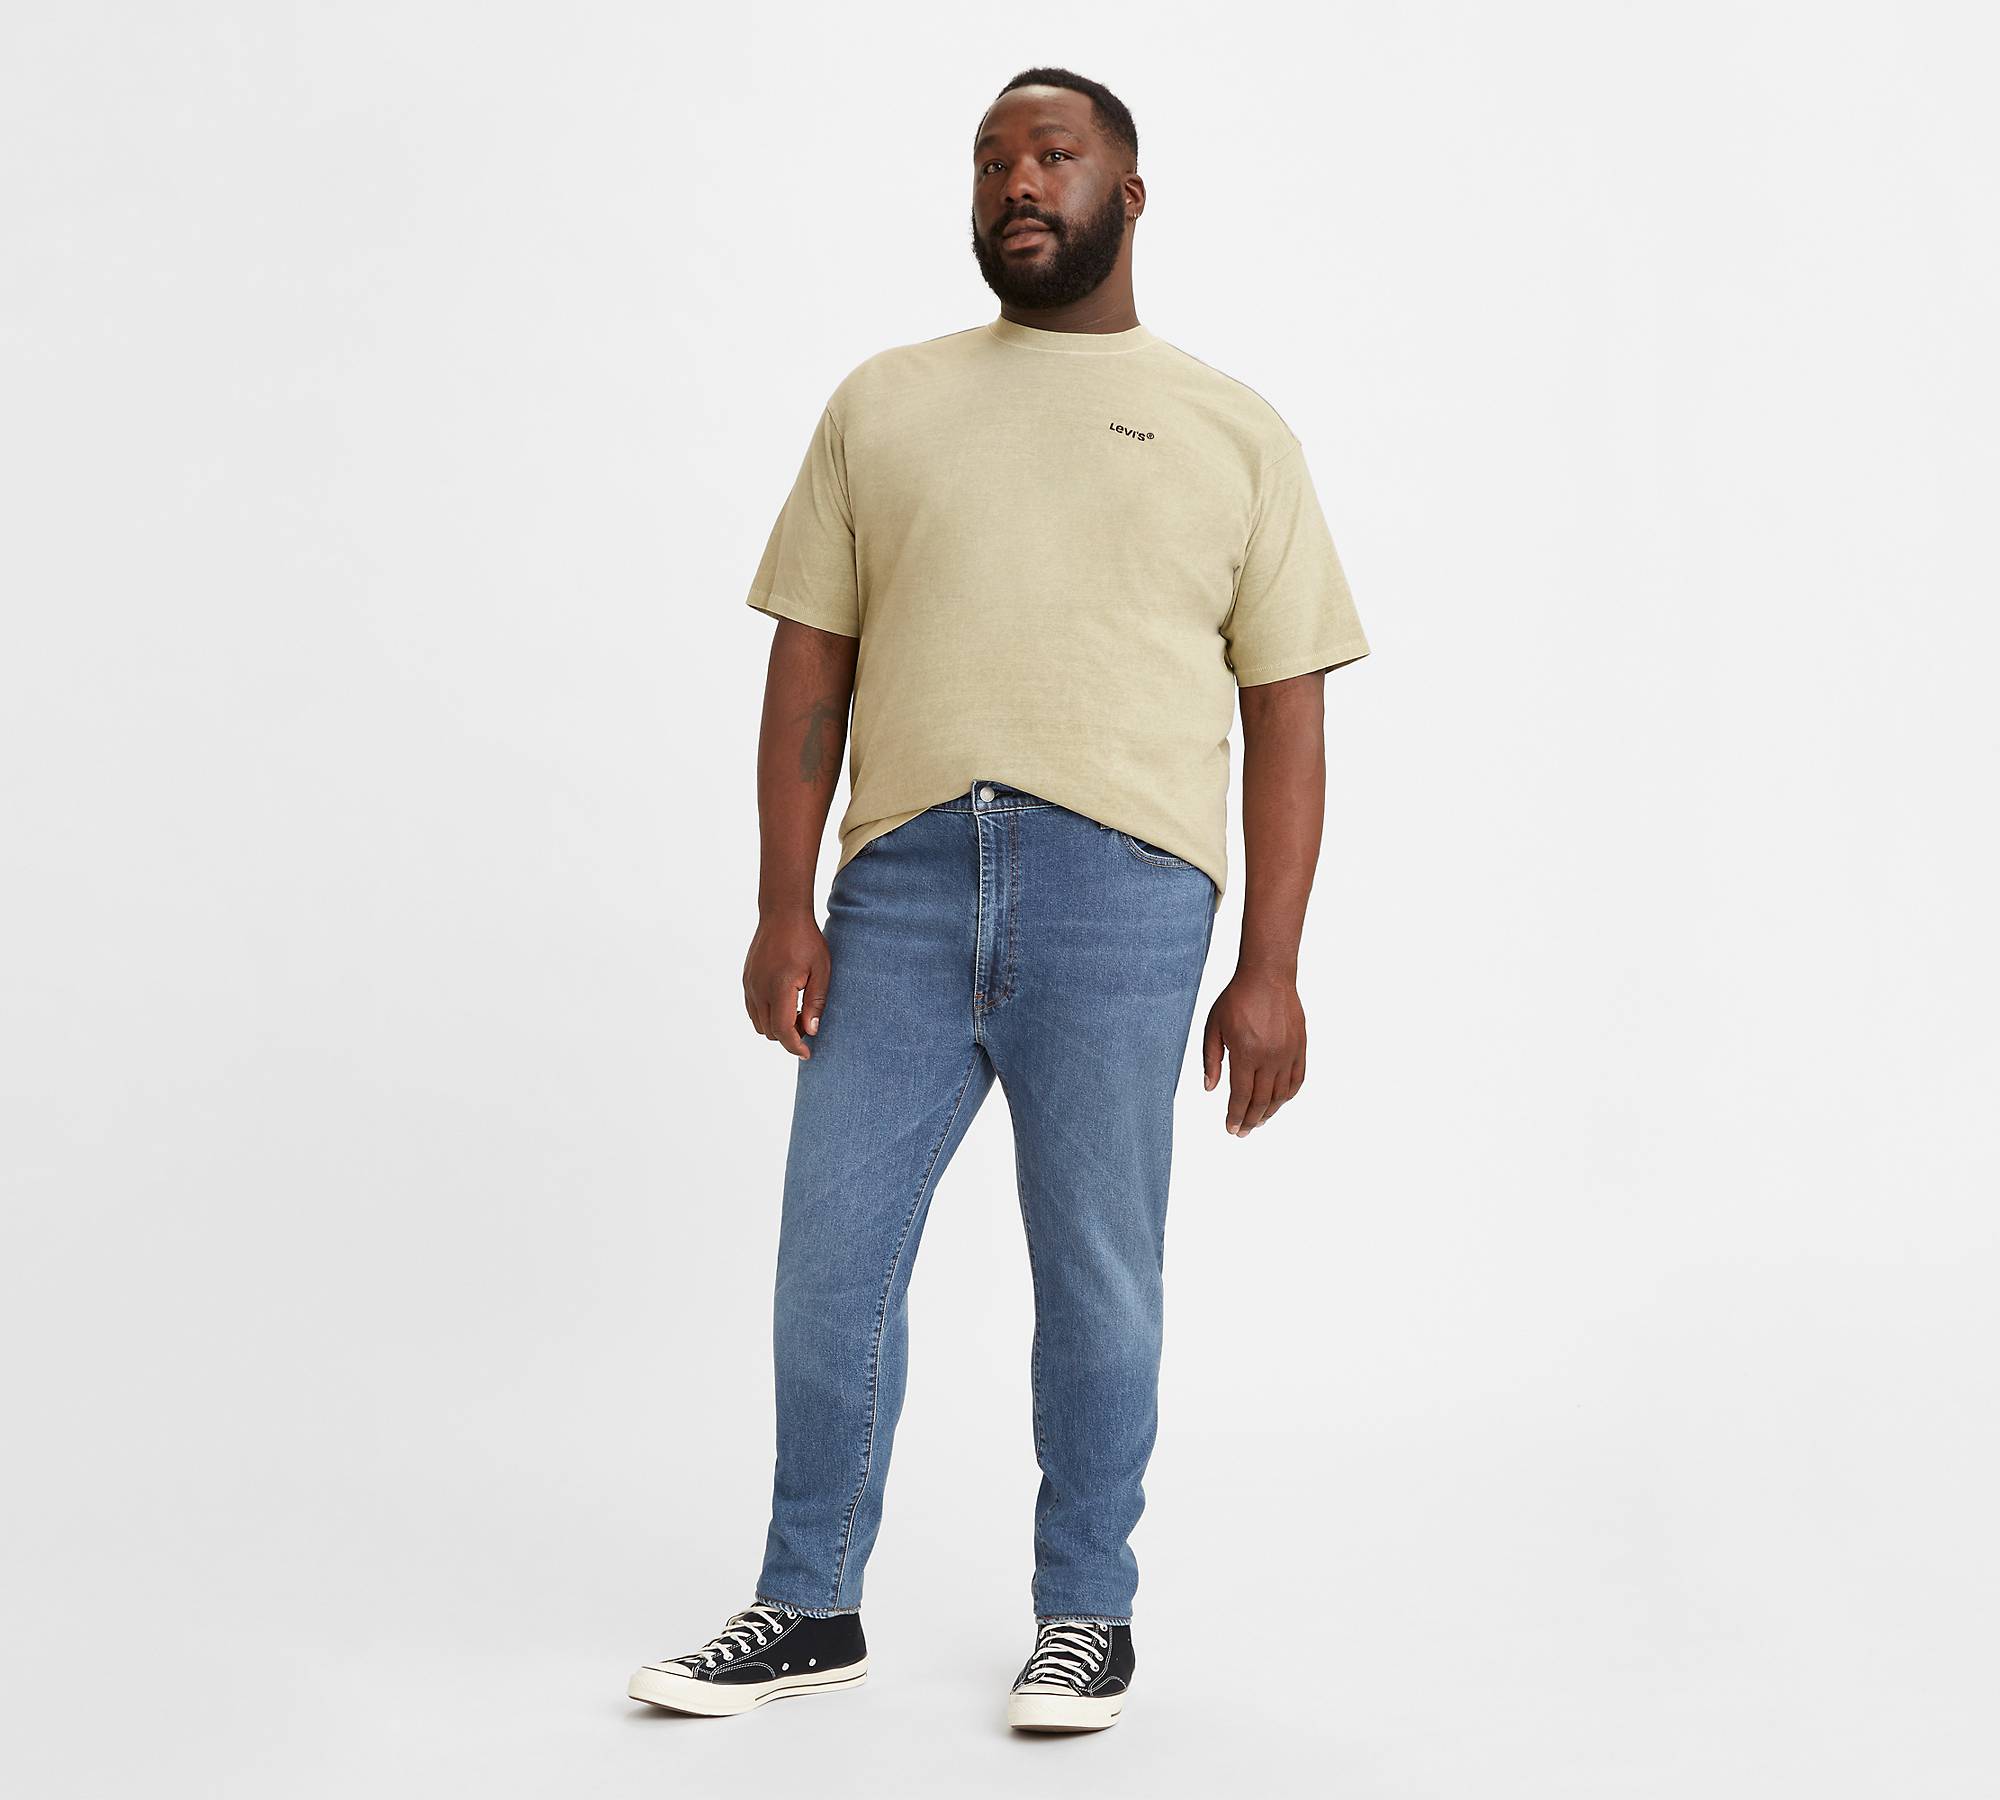 512™ Slim Taper Levi's® Flex Men's Jeans (Big & Tall) 1